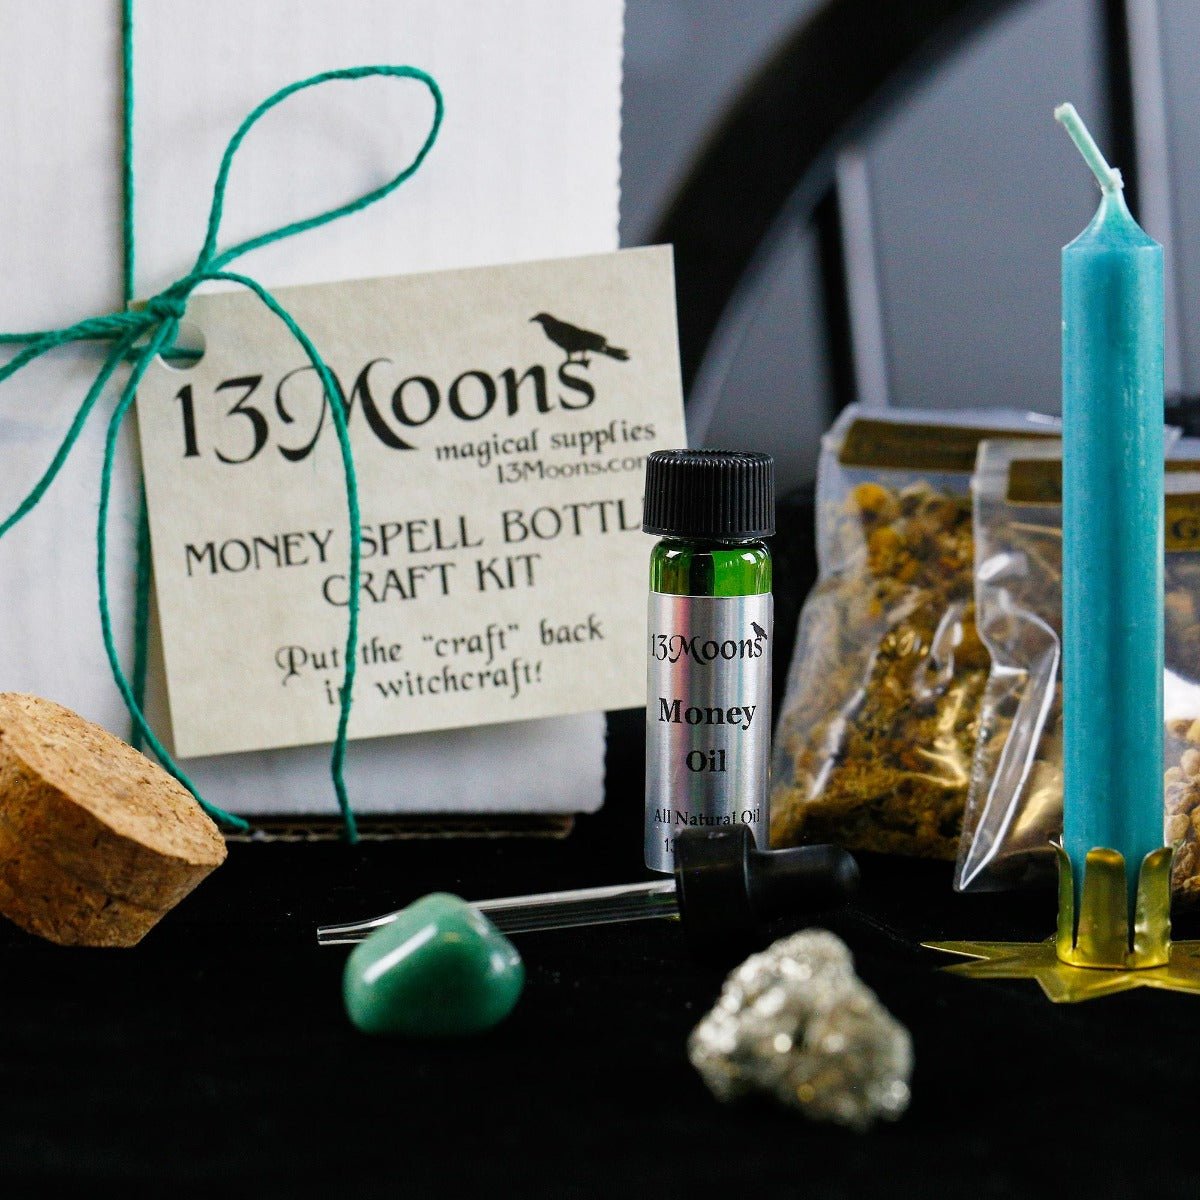 Money Spell Bottle Craft Kit - 13 Moons